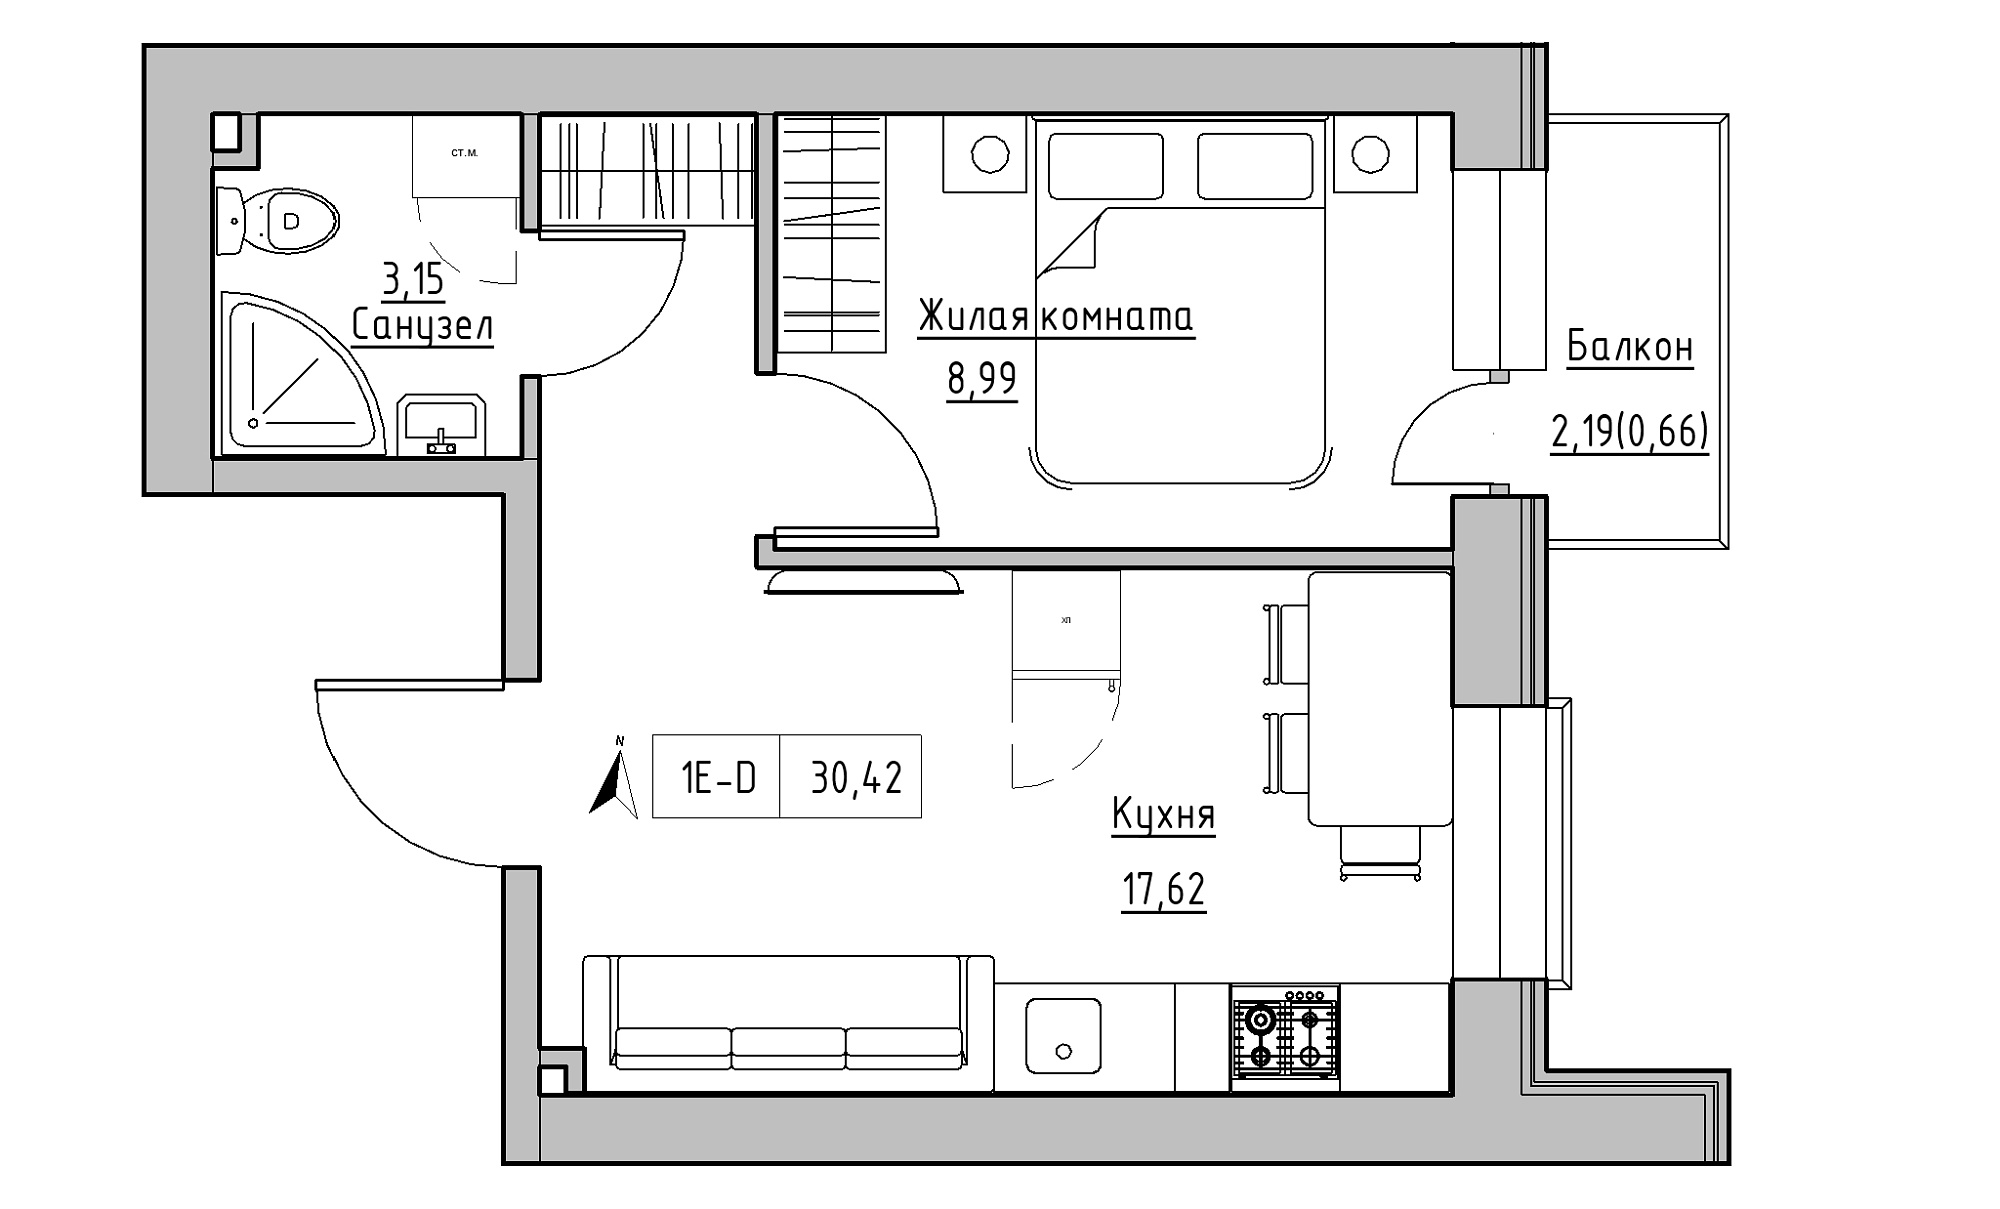 Планування 1-к квартира площею 30.42м2, KS-016-02/0013.